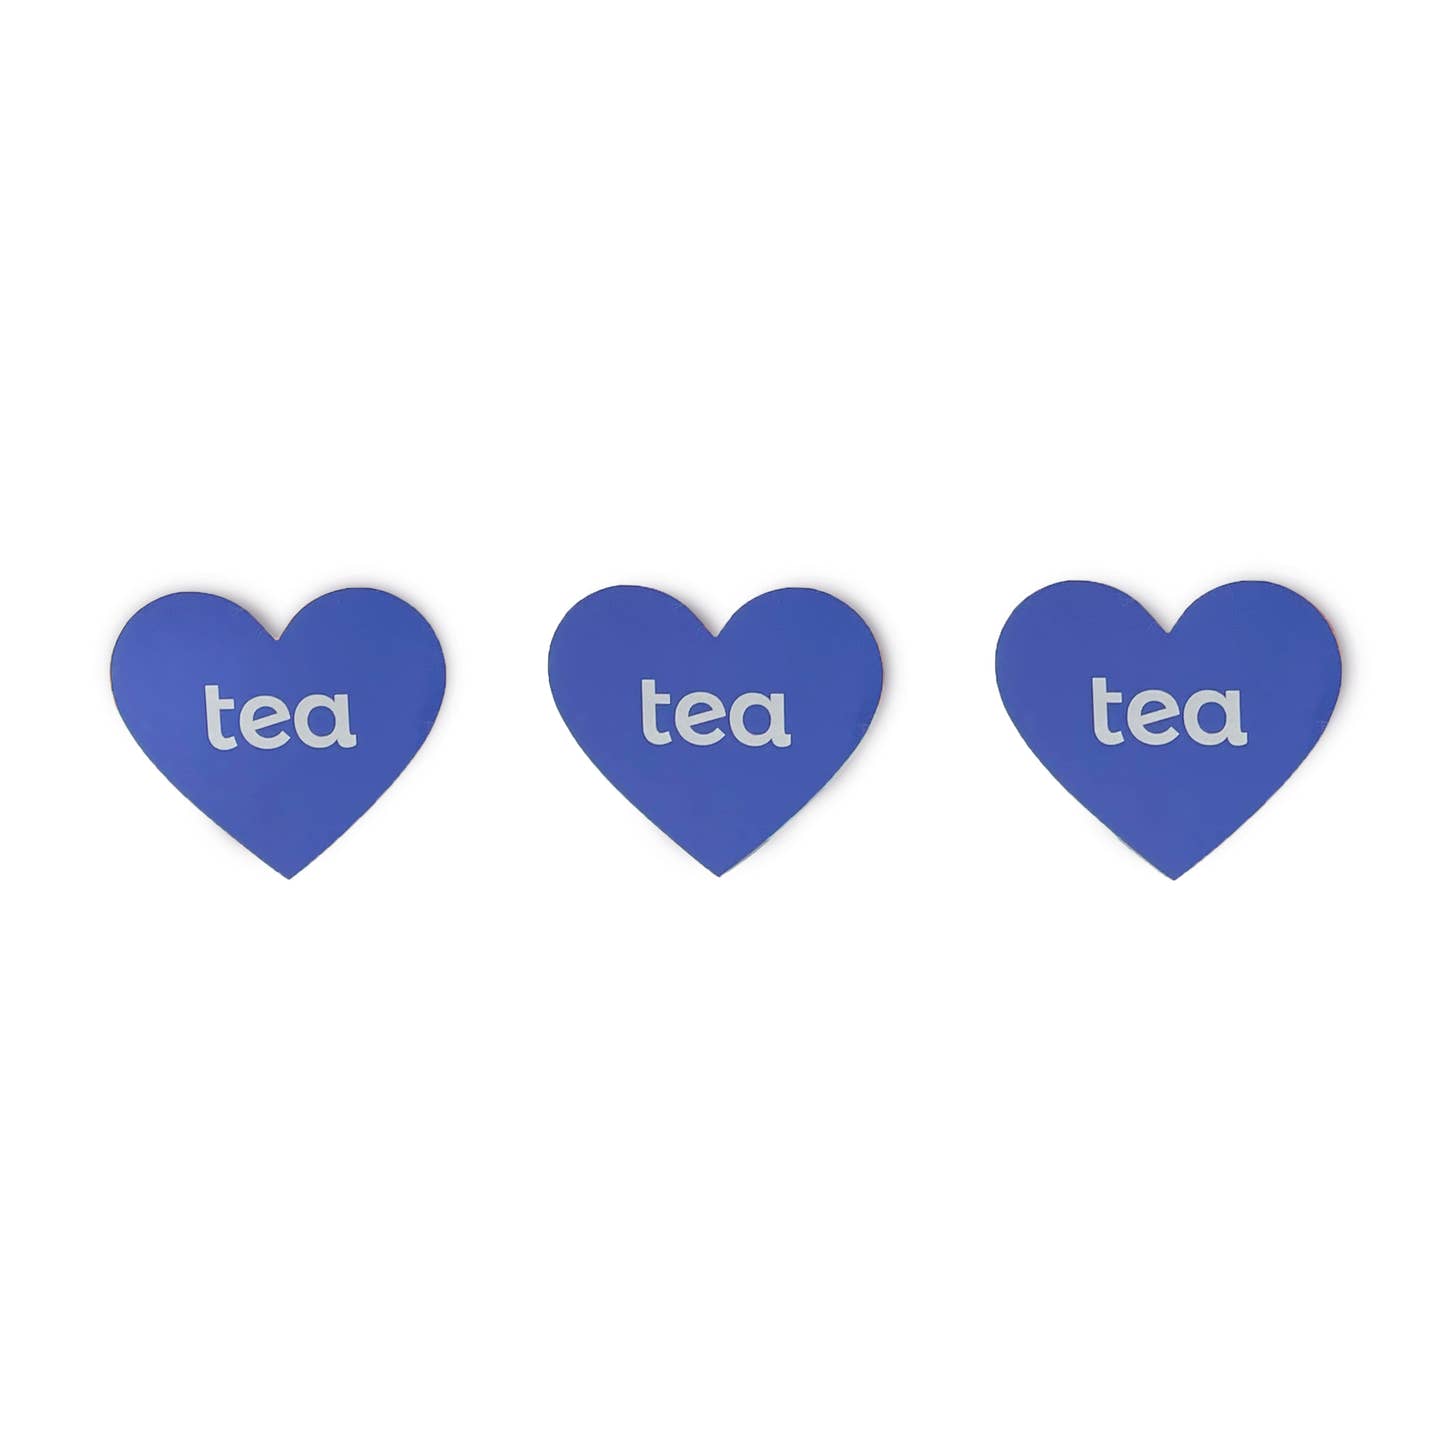 Tea Heart Sticker Pack